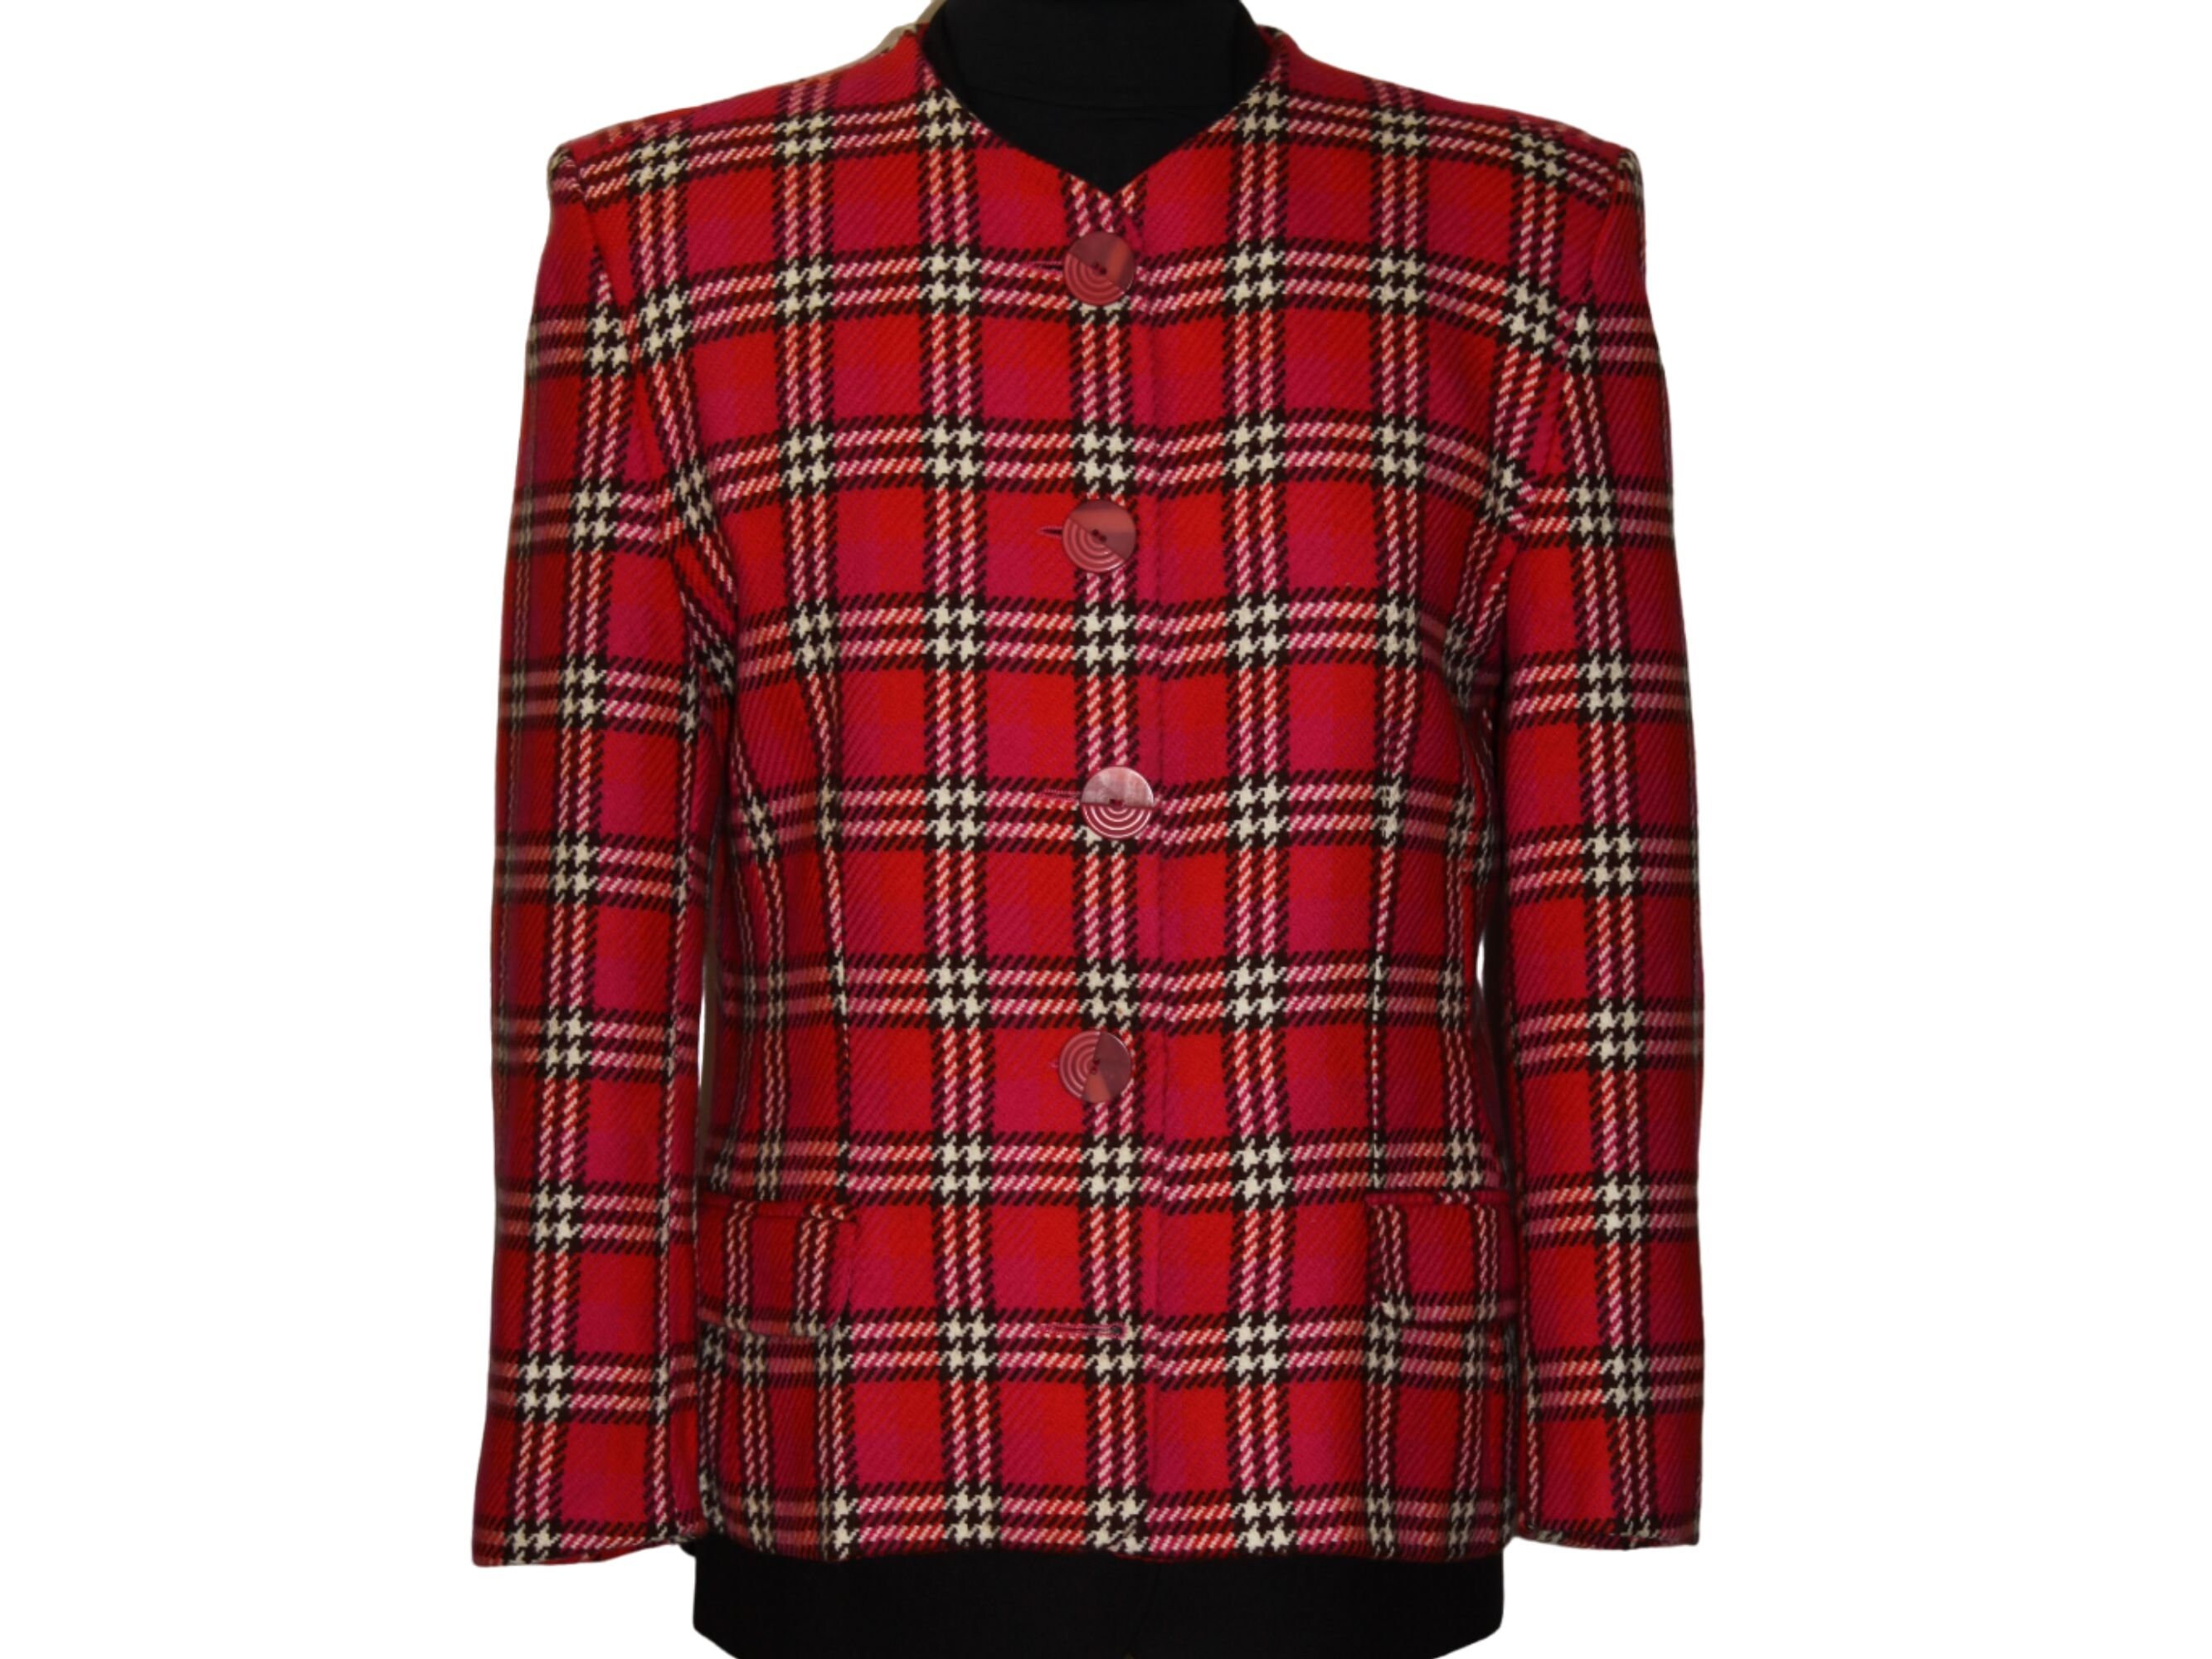 Buy Rare Ladies V.I.P. Vintage Tweed Checked Pink Black Jacket